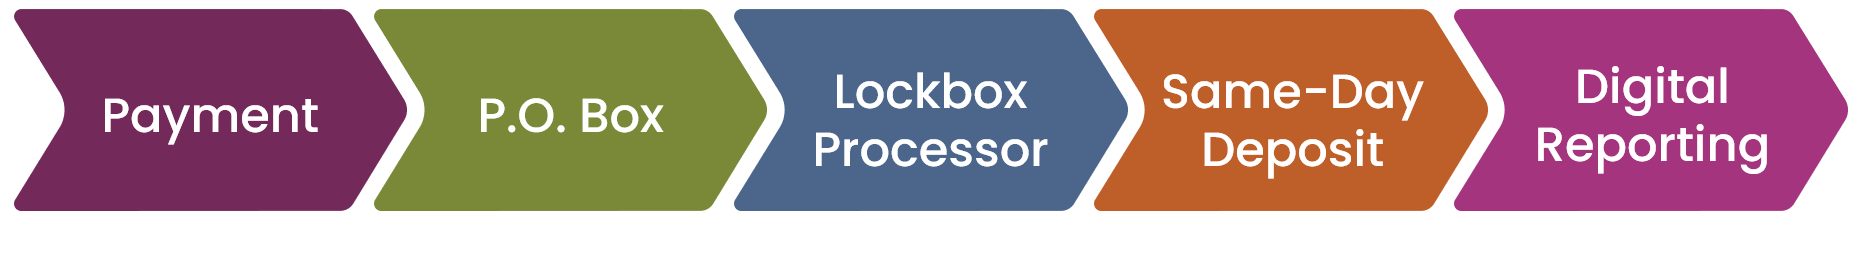 2020 Lockbox process